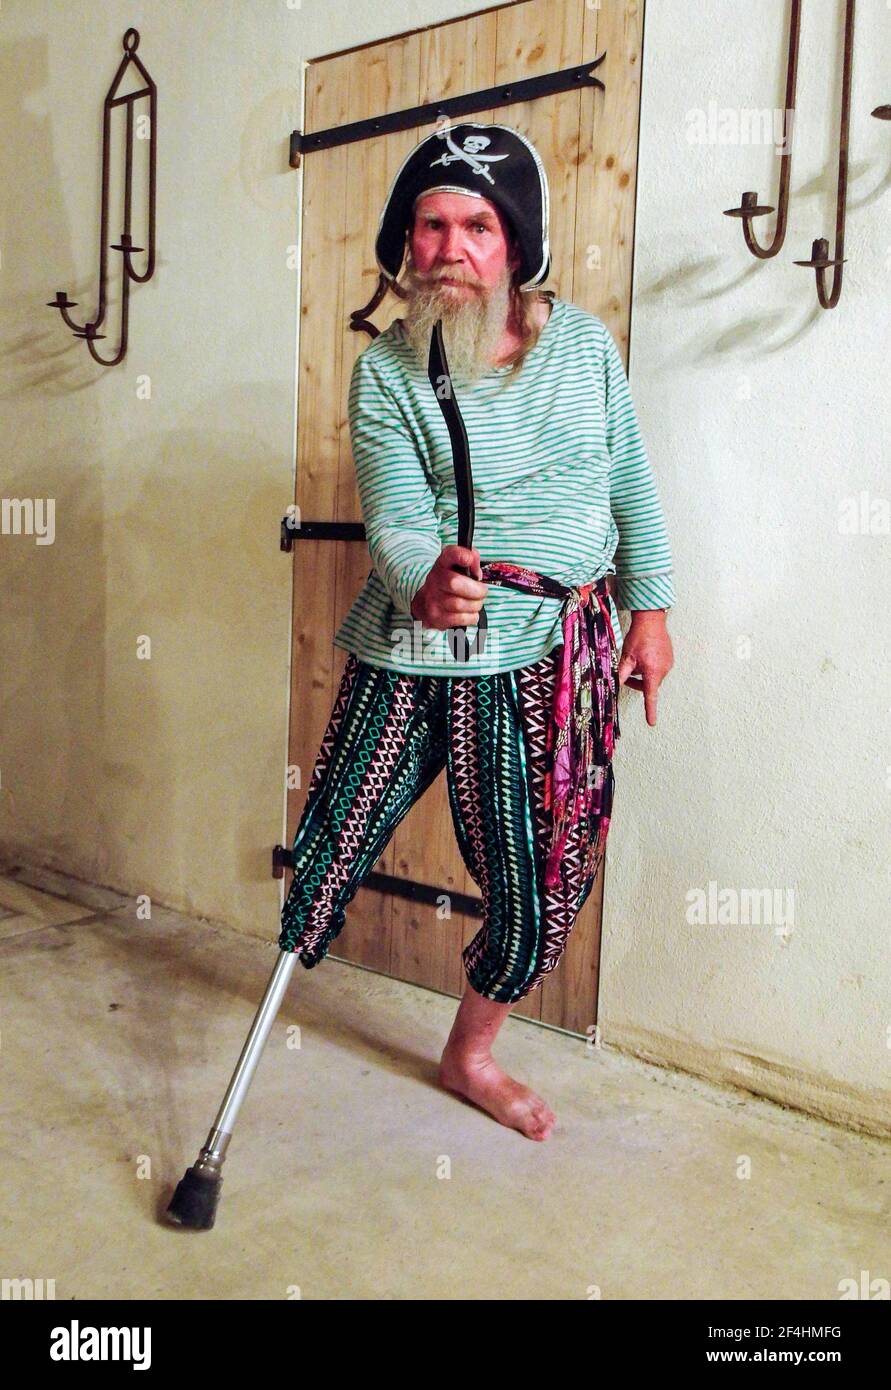 Homme barbu plus âgé manquant la jambe droite inférieure en utilisant son handicap pour s'habiller comme un pirate. Banque D'Images